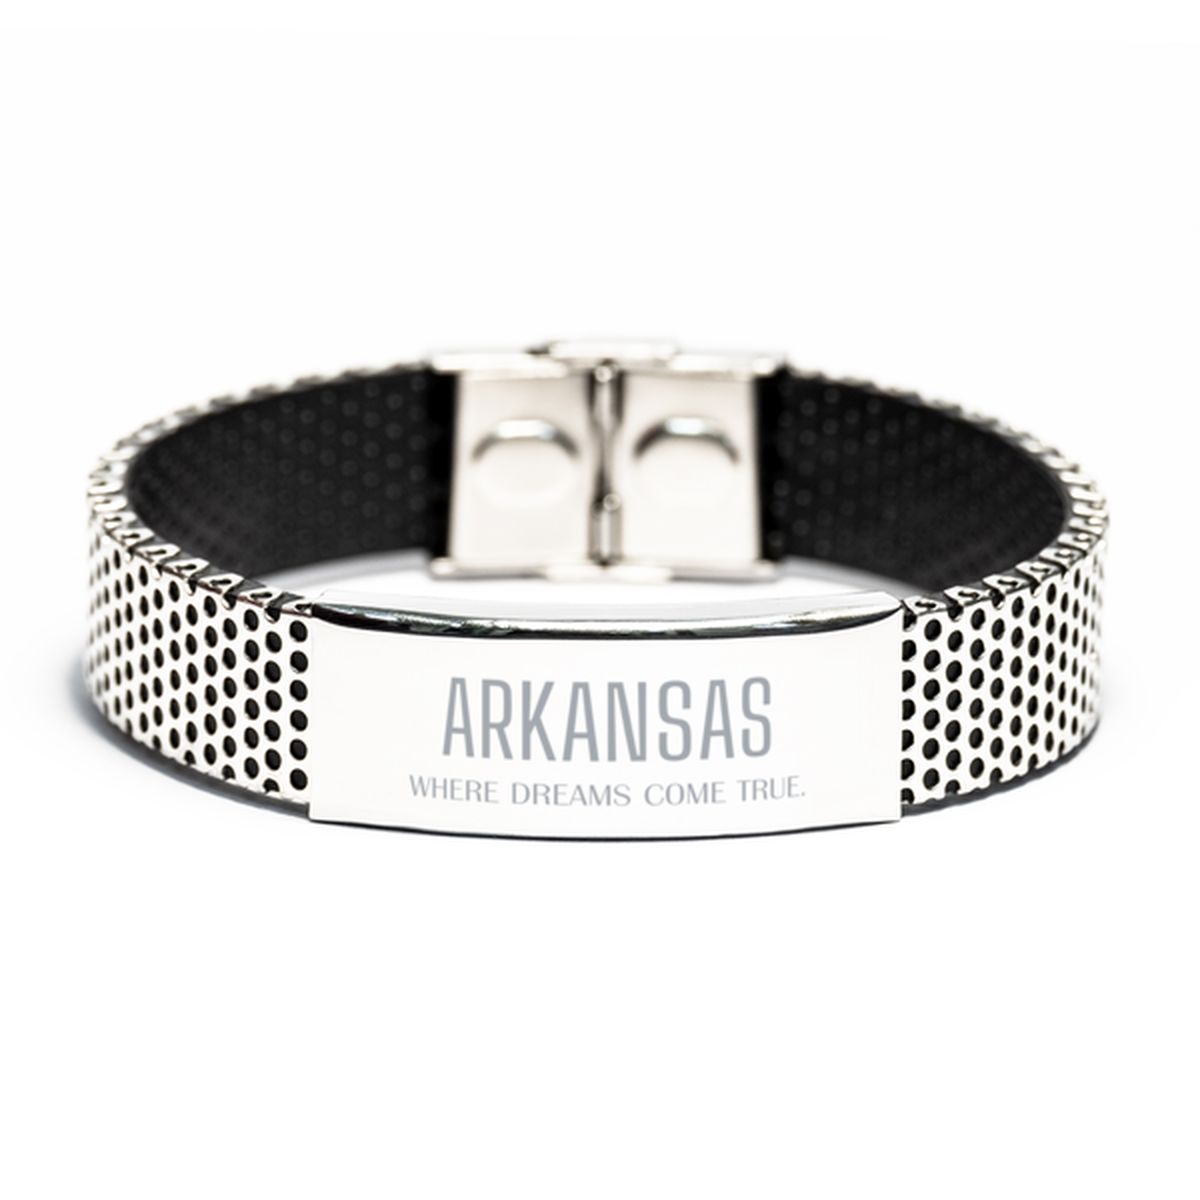 Love Arkansas State Stainless Steel Bracelet, Arkansas Where dreams come true, Birthday Inspirational Gifts For Arkansas Men, Women, Friends